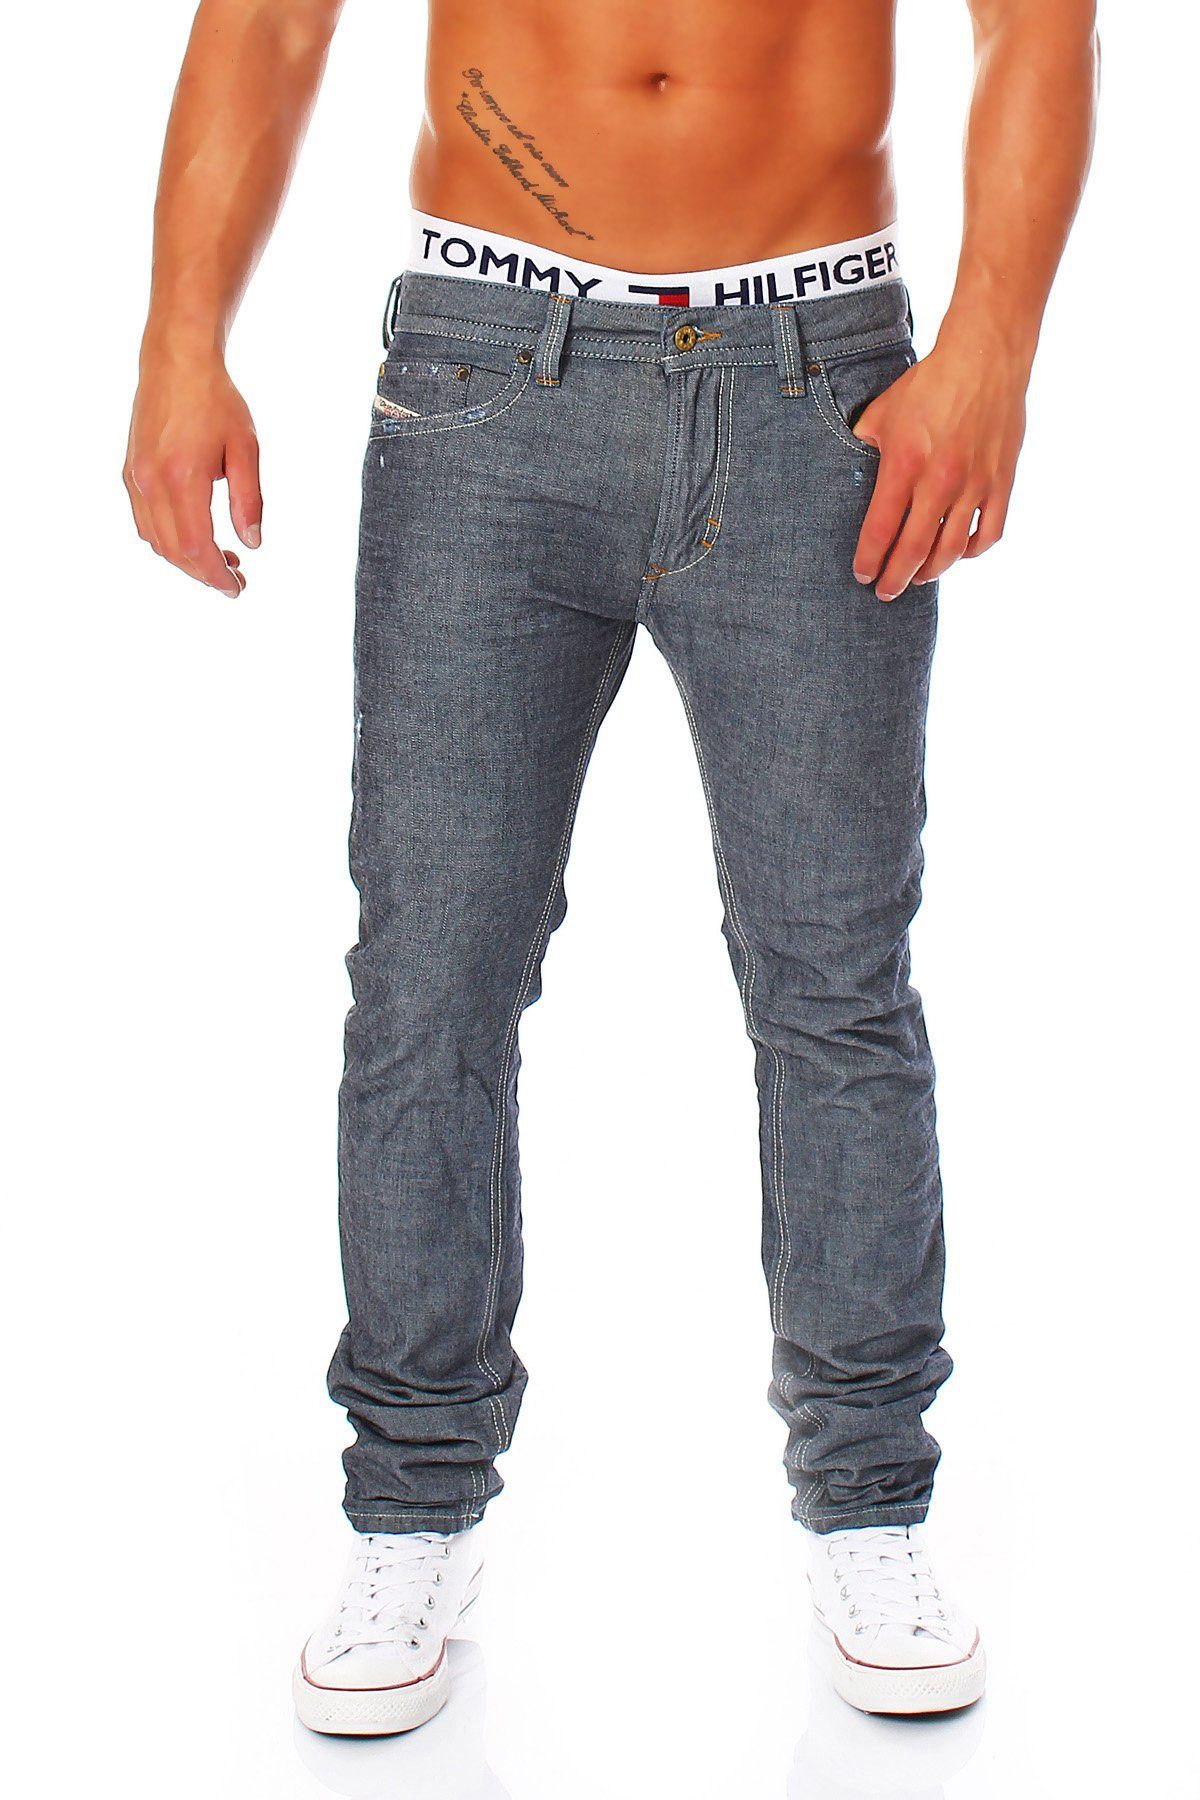 Pocket 5 Herren Röhrenjeans, Used-Look Diesel Style, Slim-fit-Jeans 0809D Thavar Blau-Grau, Dezenter